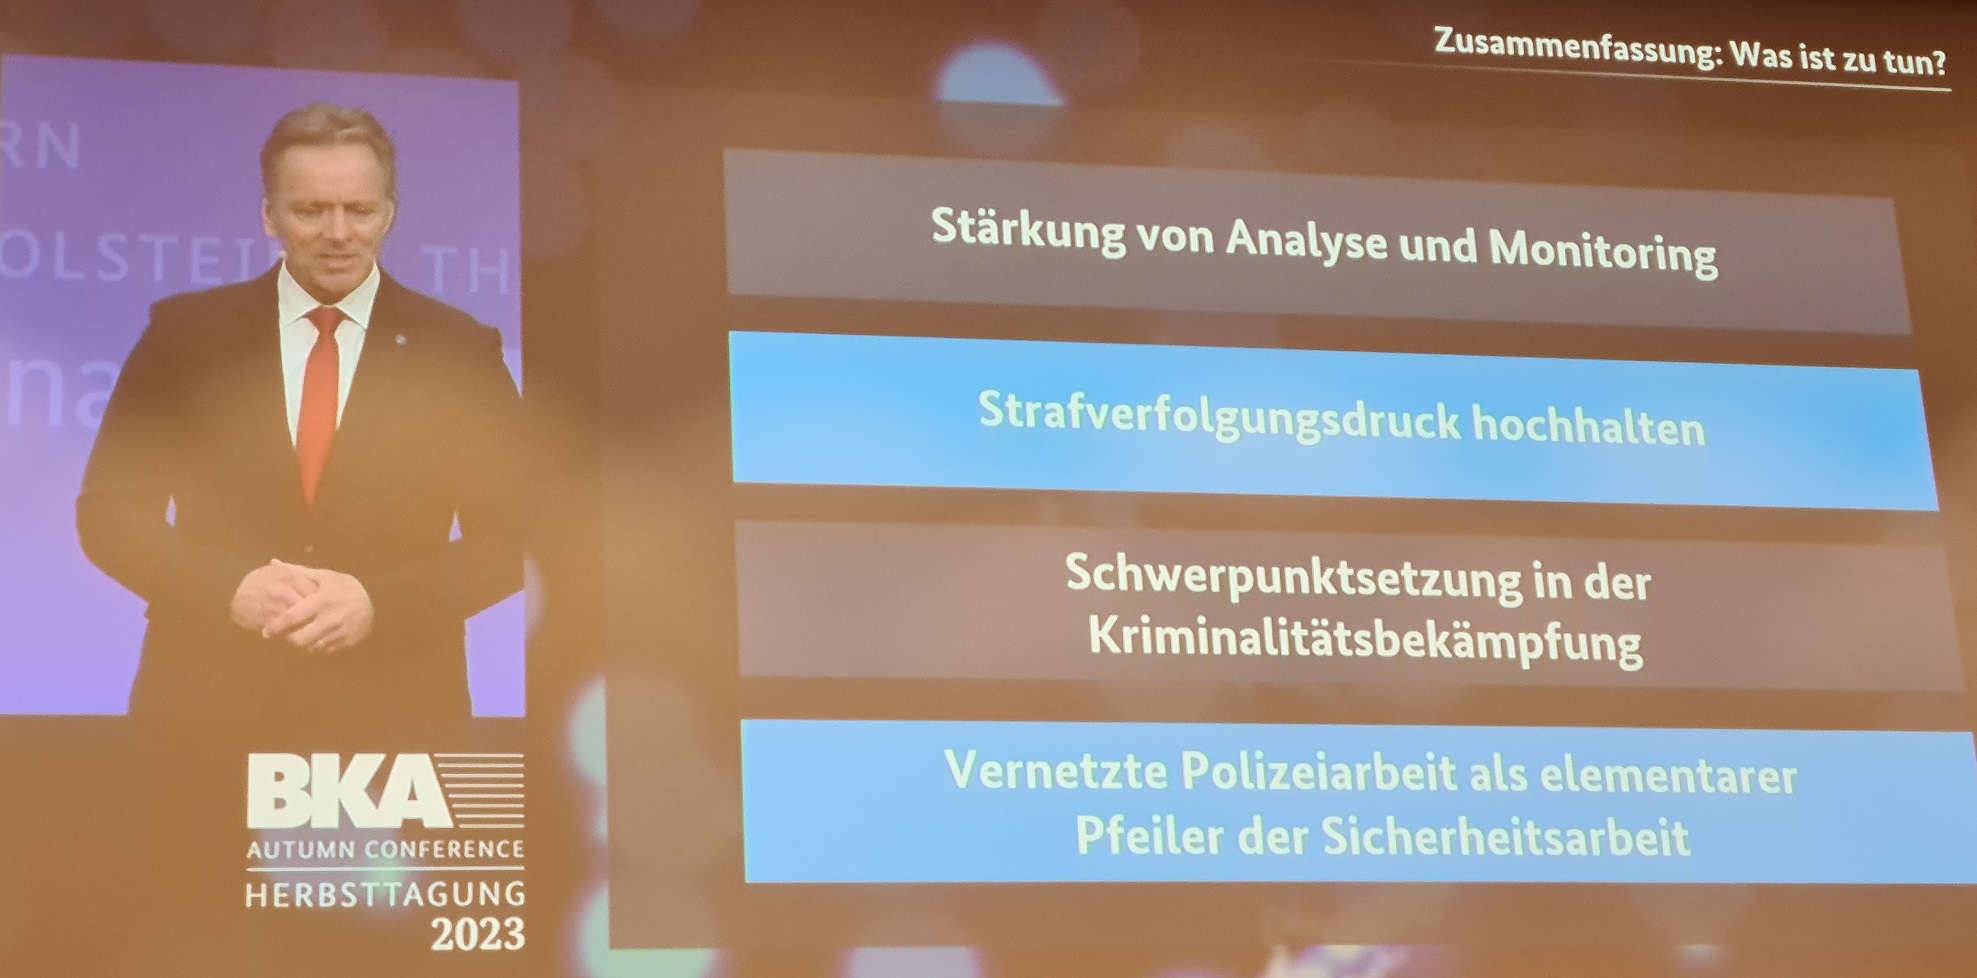 Zusammenfassung beim Vortrag des BKA-Präsidenten Holger Münch